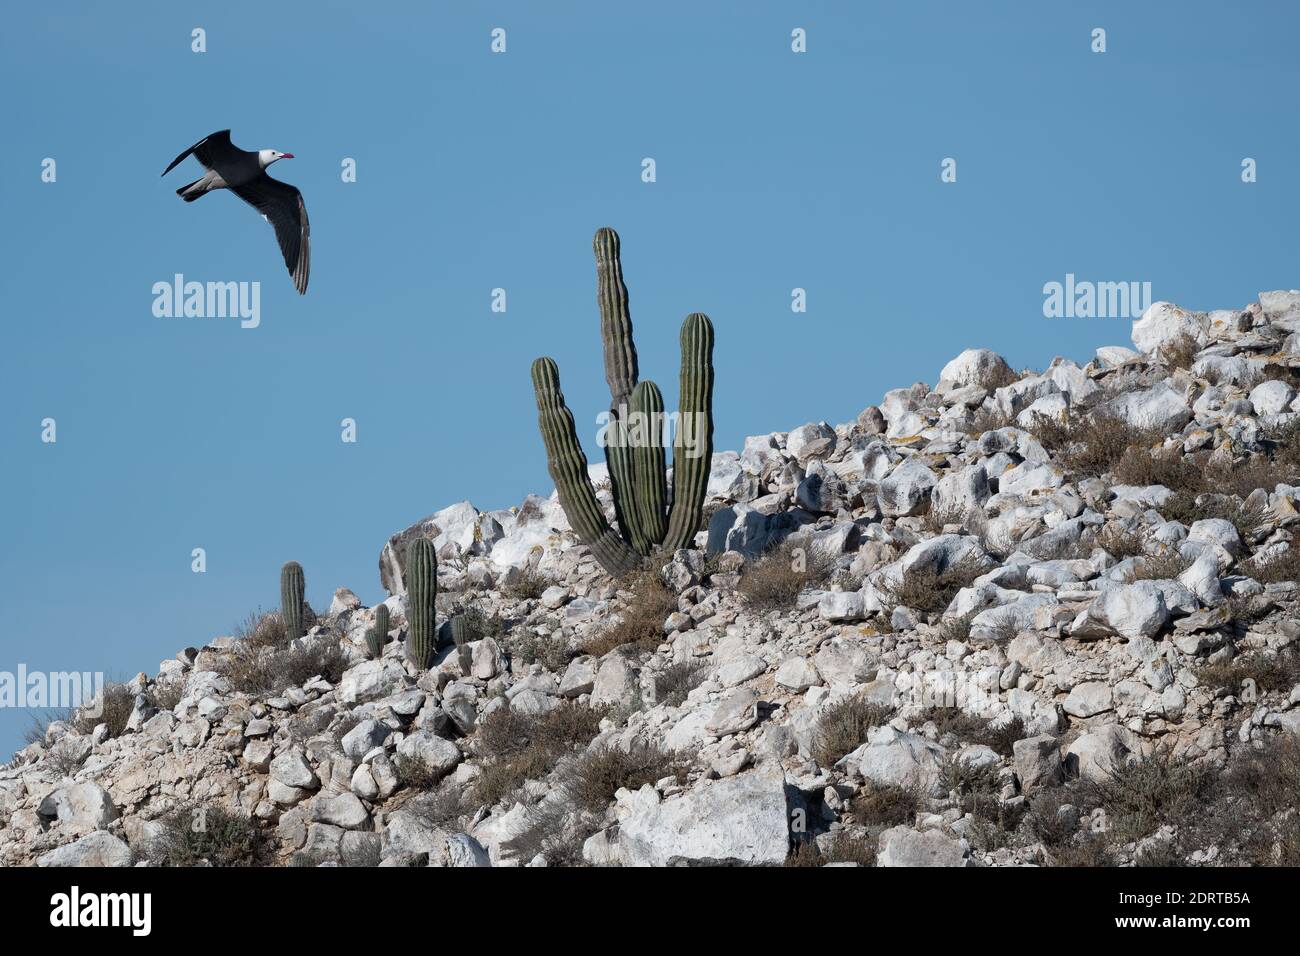 Eine Heermann-Möwe (Larus heermanni) fliegt über den Cardonkaktus (Pachycereus pringlei) auf der Isla Rasa im Meer von Cortez, Baja California, Mexiko. Stockfoto